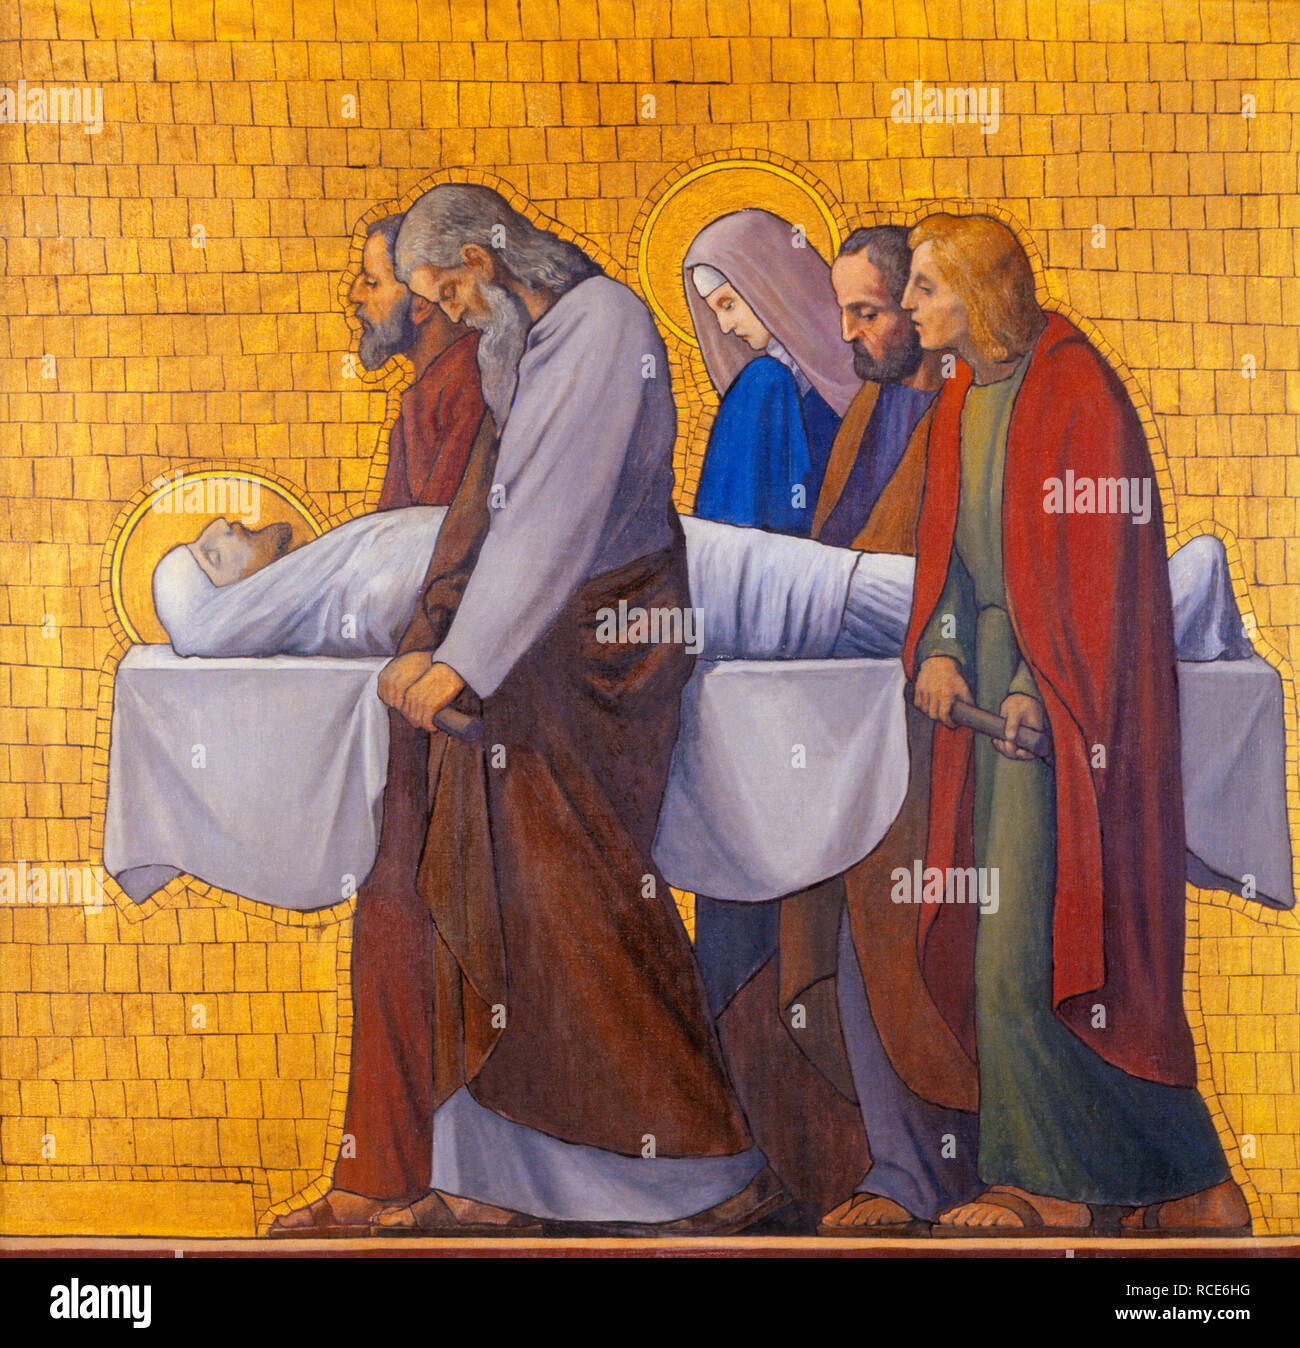 Praga, Repubblica Ceca - 17 ottobre 2018: la pittura della sepoltura di Gesù (modo cross station) nella chiesa kostel Svatého Cyrila Metodeje Foto Stock